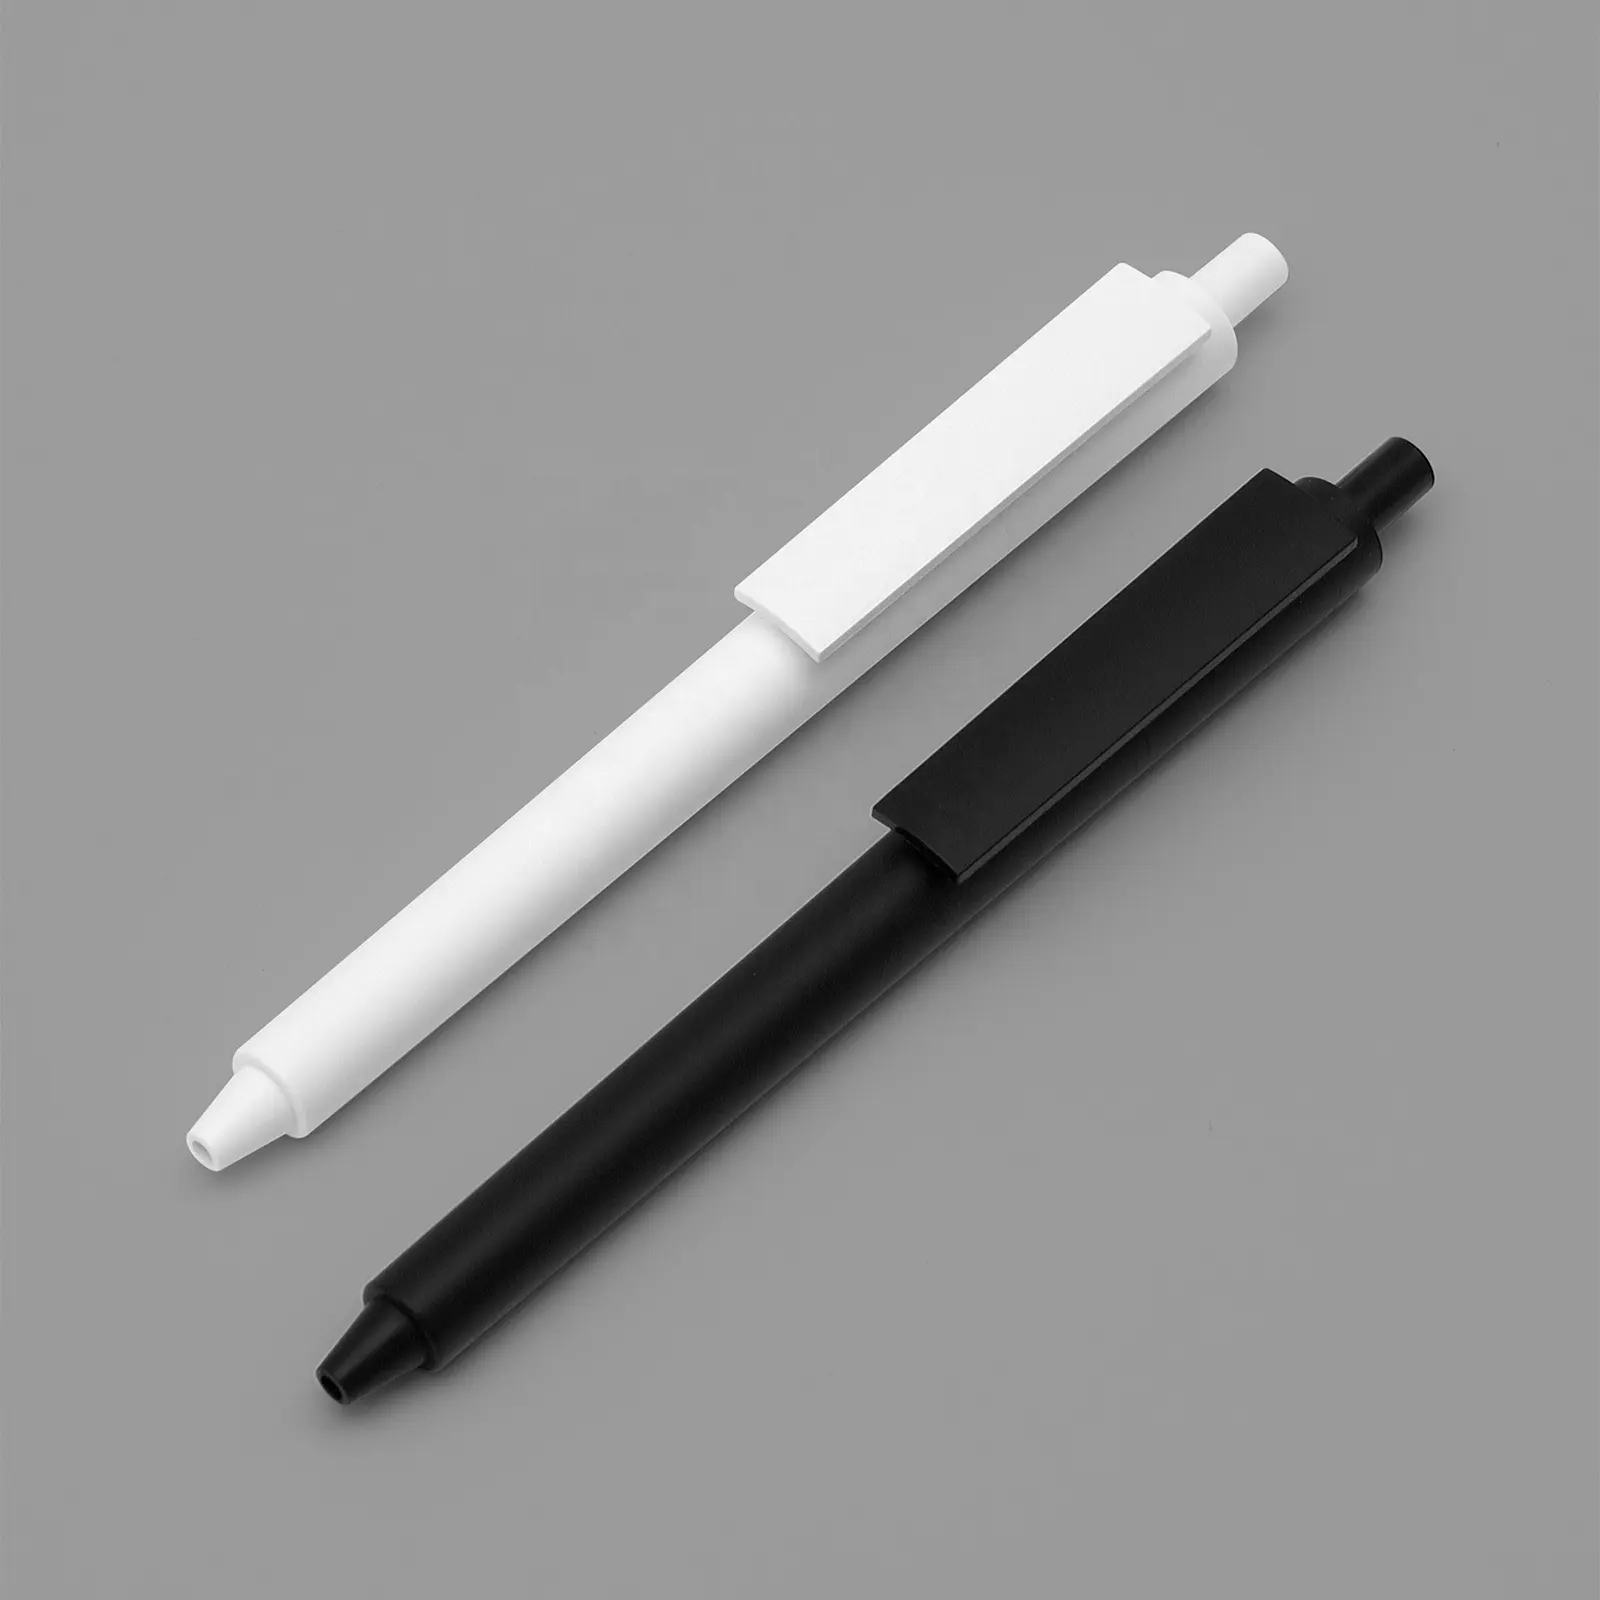 KACO 서페이스 젤 잉크 펜 0.5mm 파인 포인트 블랙 잉크 학교 사무용품